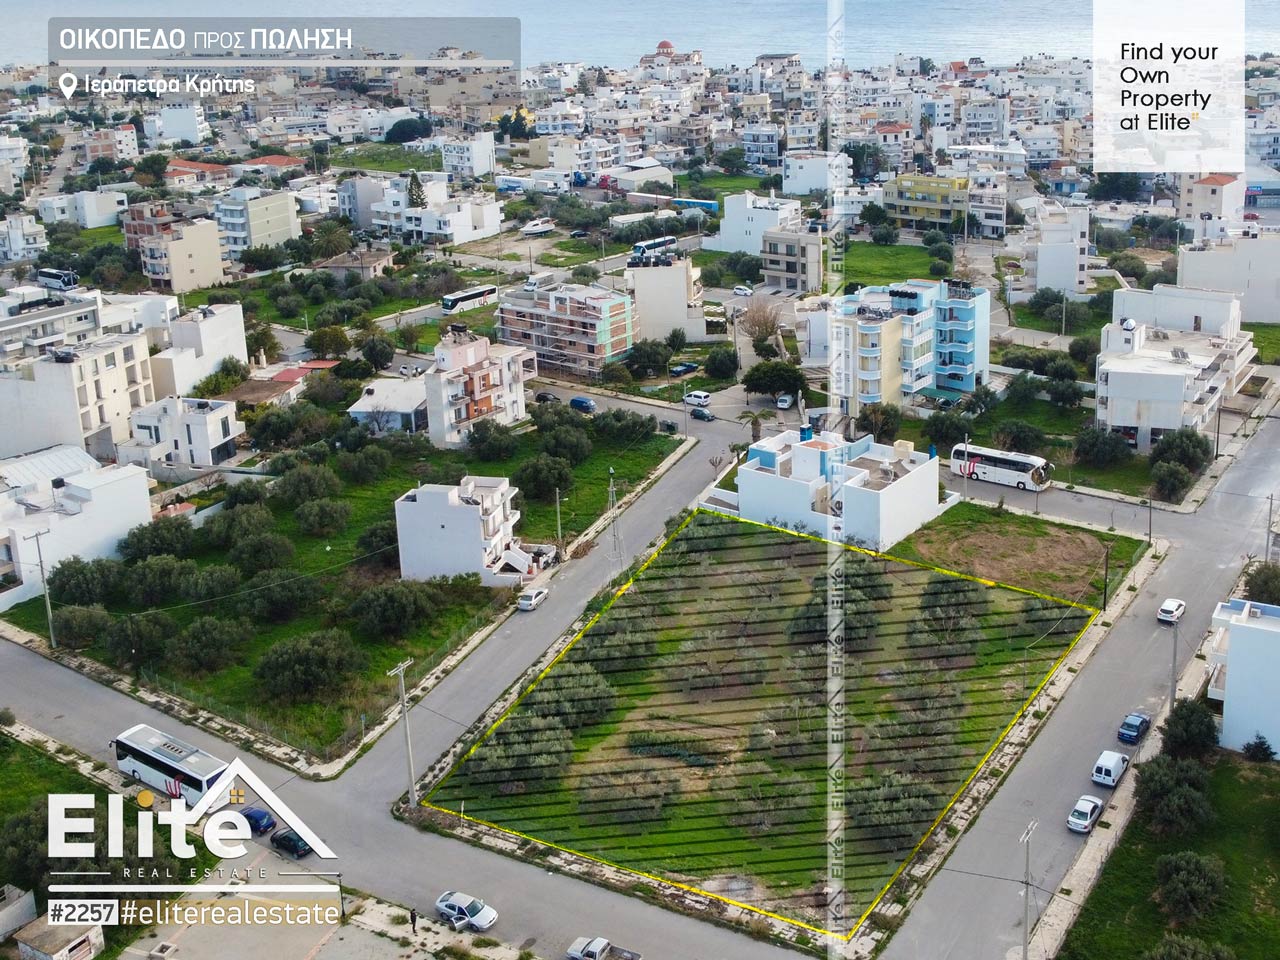 Land for sale in Ierapetra, Crete #2257 | ELITE REAL ESTATE